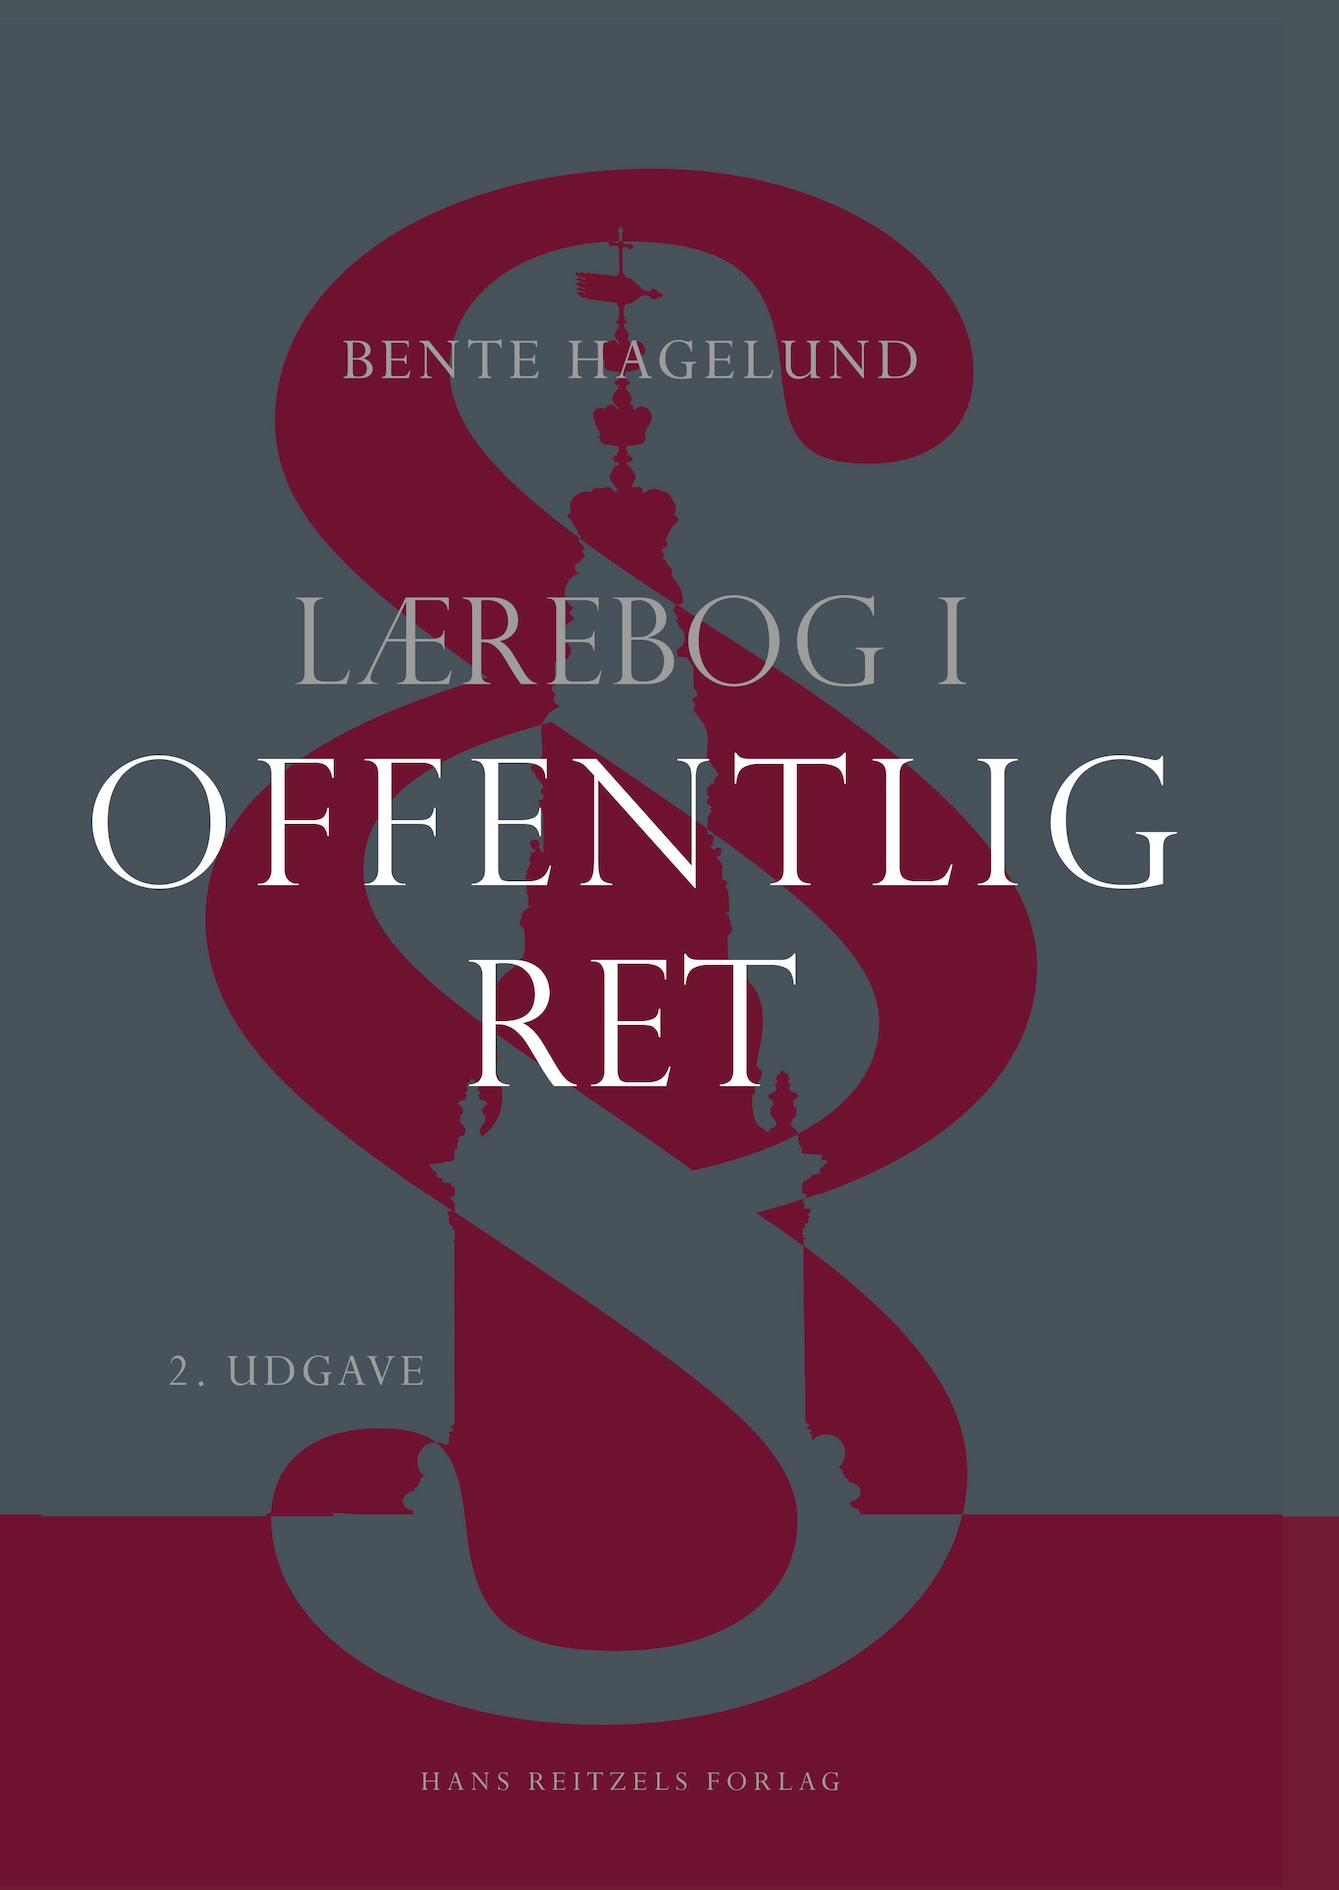 Bente Hagelund: Lærebog i offentlig ret, Hans Reitzels forlag.